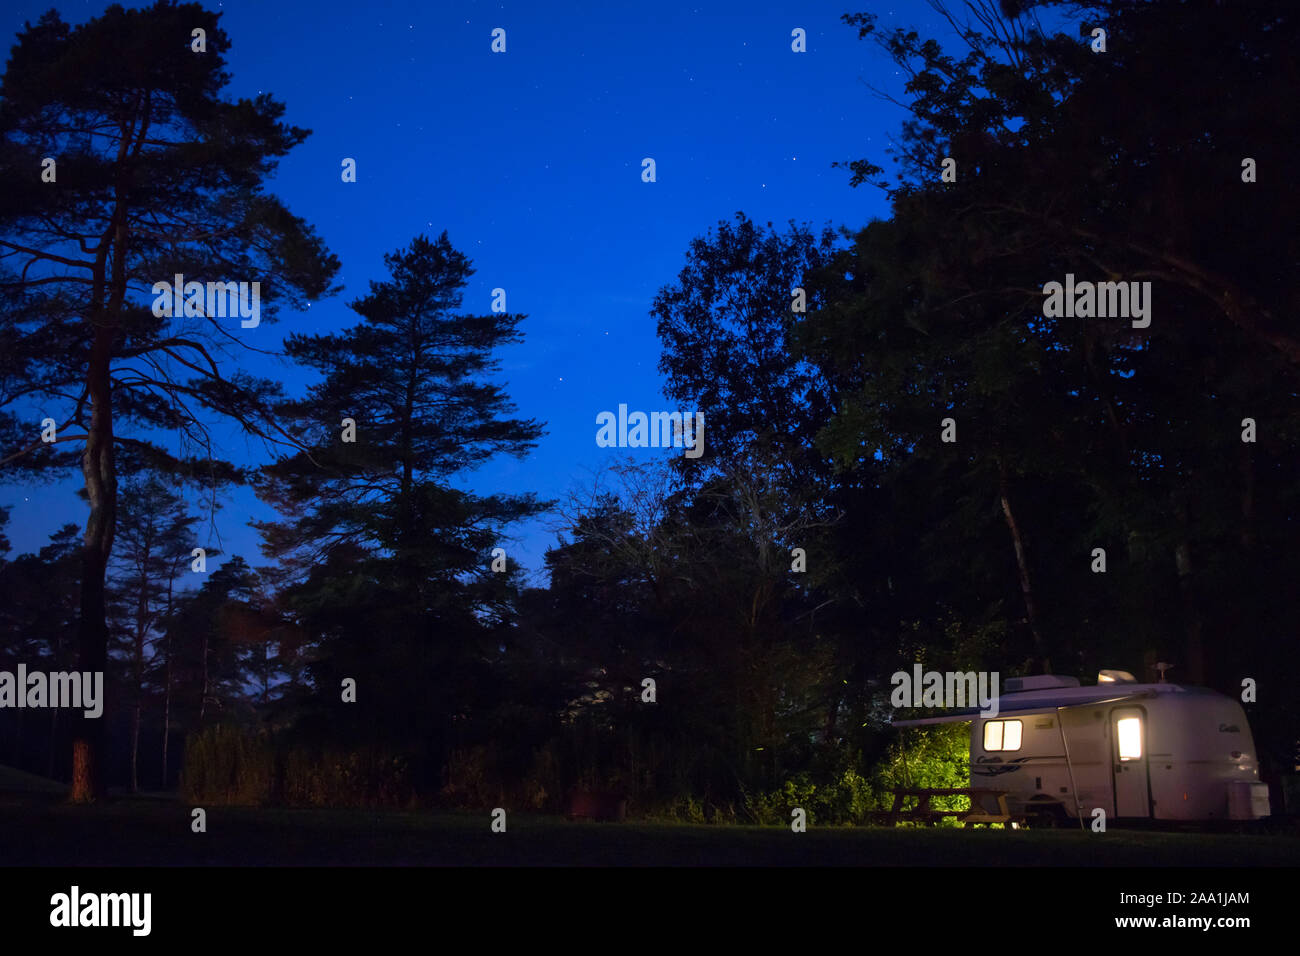 Casita leichter Reiseanhänger bei Nacht unter den Sternen auf dem Pinecreek Campingplatz, RVing, Camping Wohnmobil-Stellplätze : 27. Juli 2019 - Ithaca, NY, USA Stockfoto